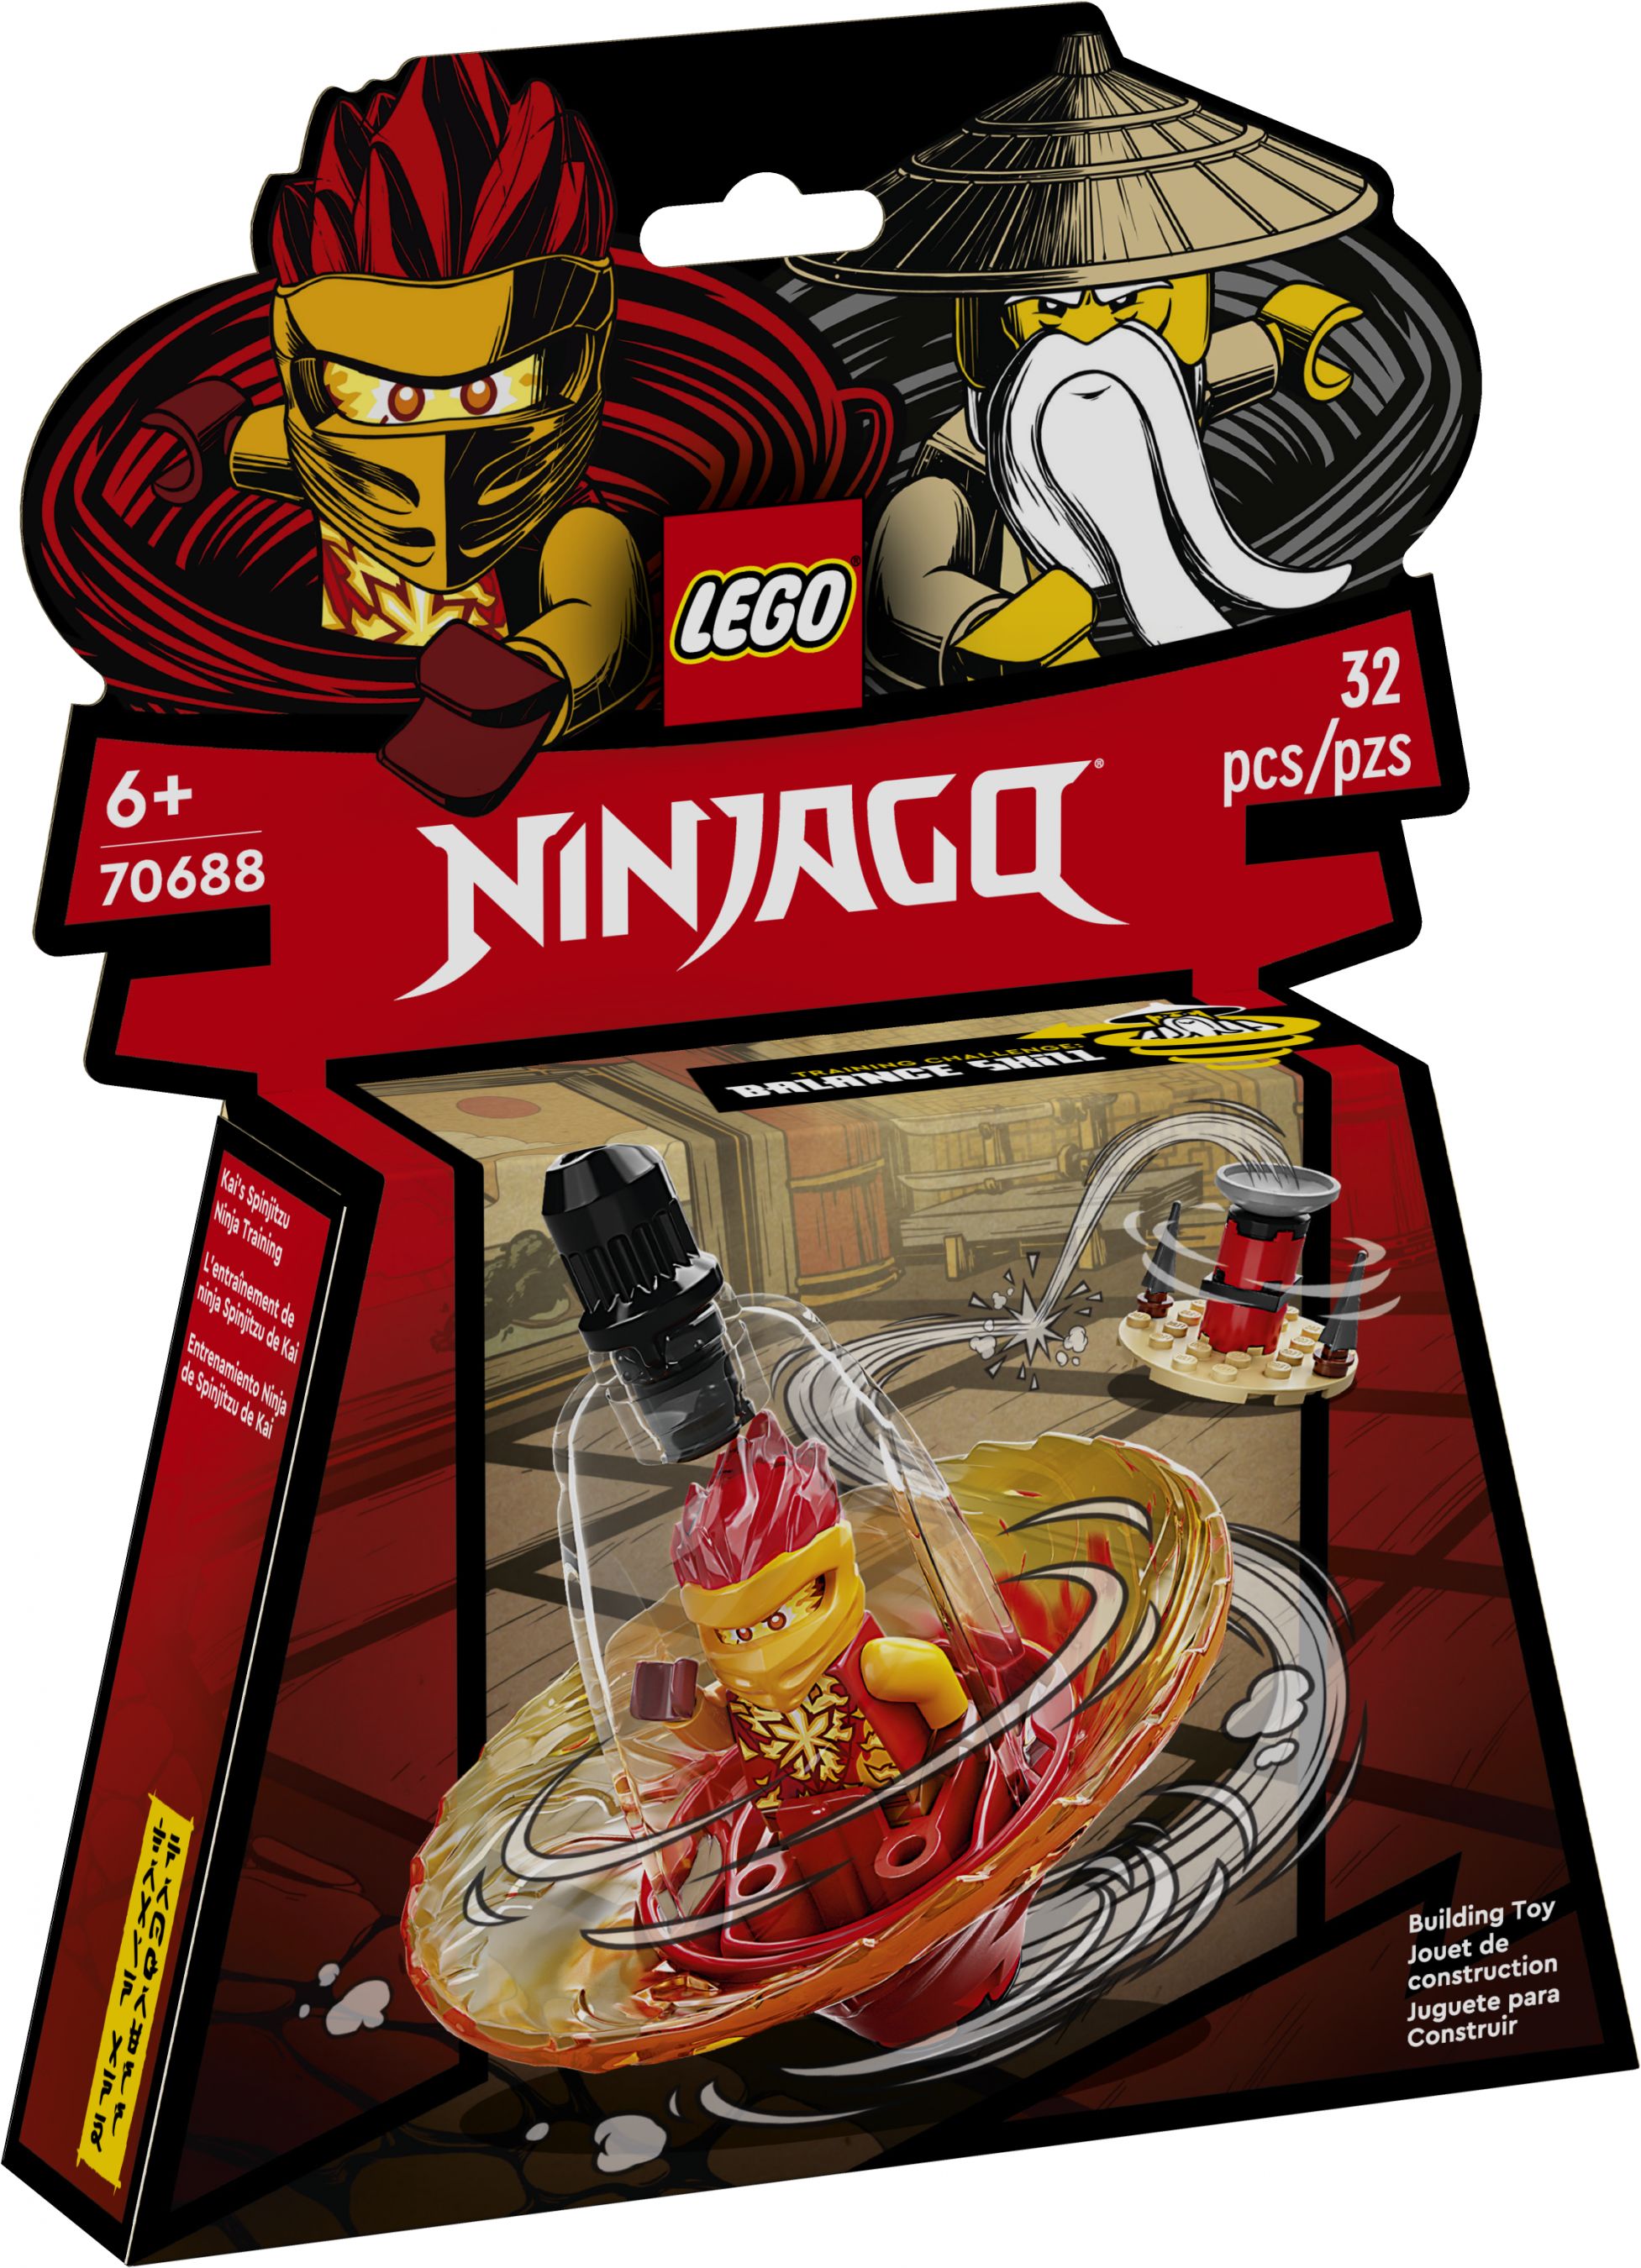 LEGO Ninjago 70688 Kais Spinjitzu-Ninjatraining LEGO_70688_Box1_V39.jpg